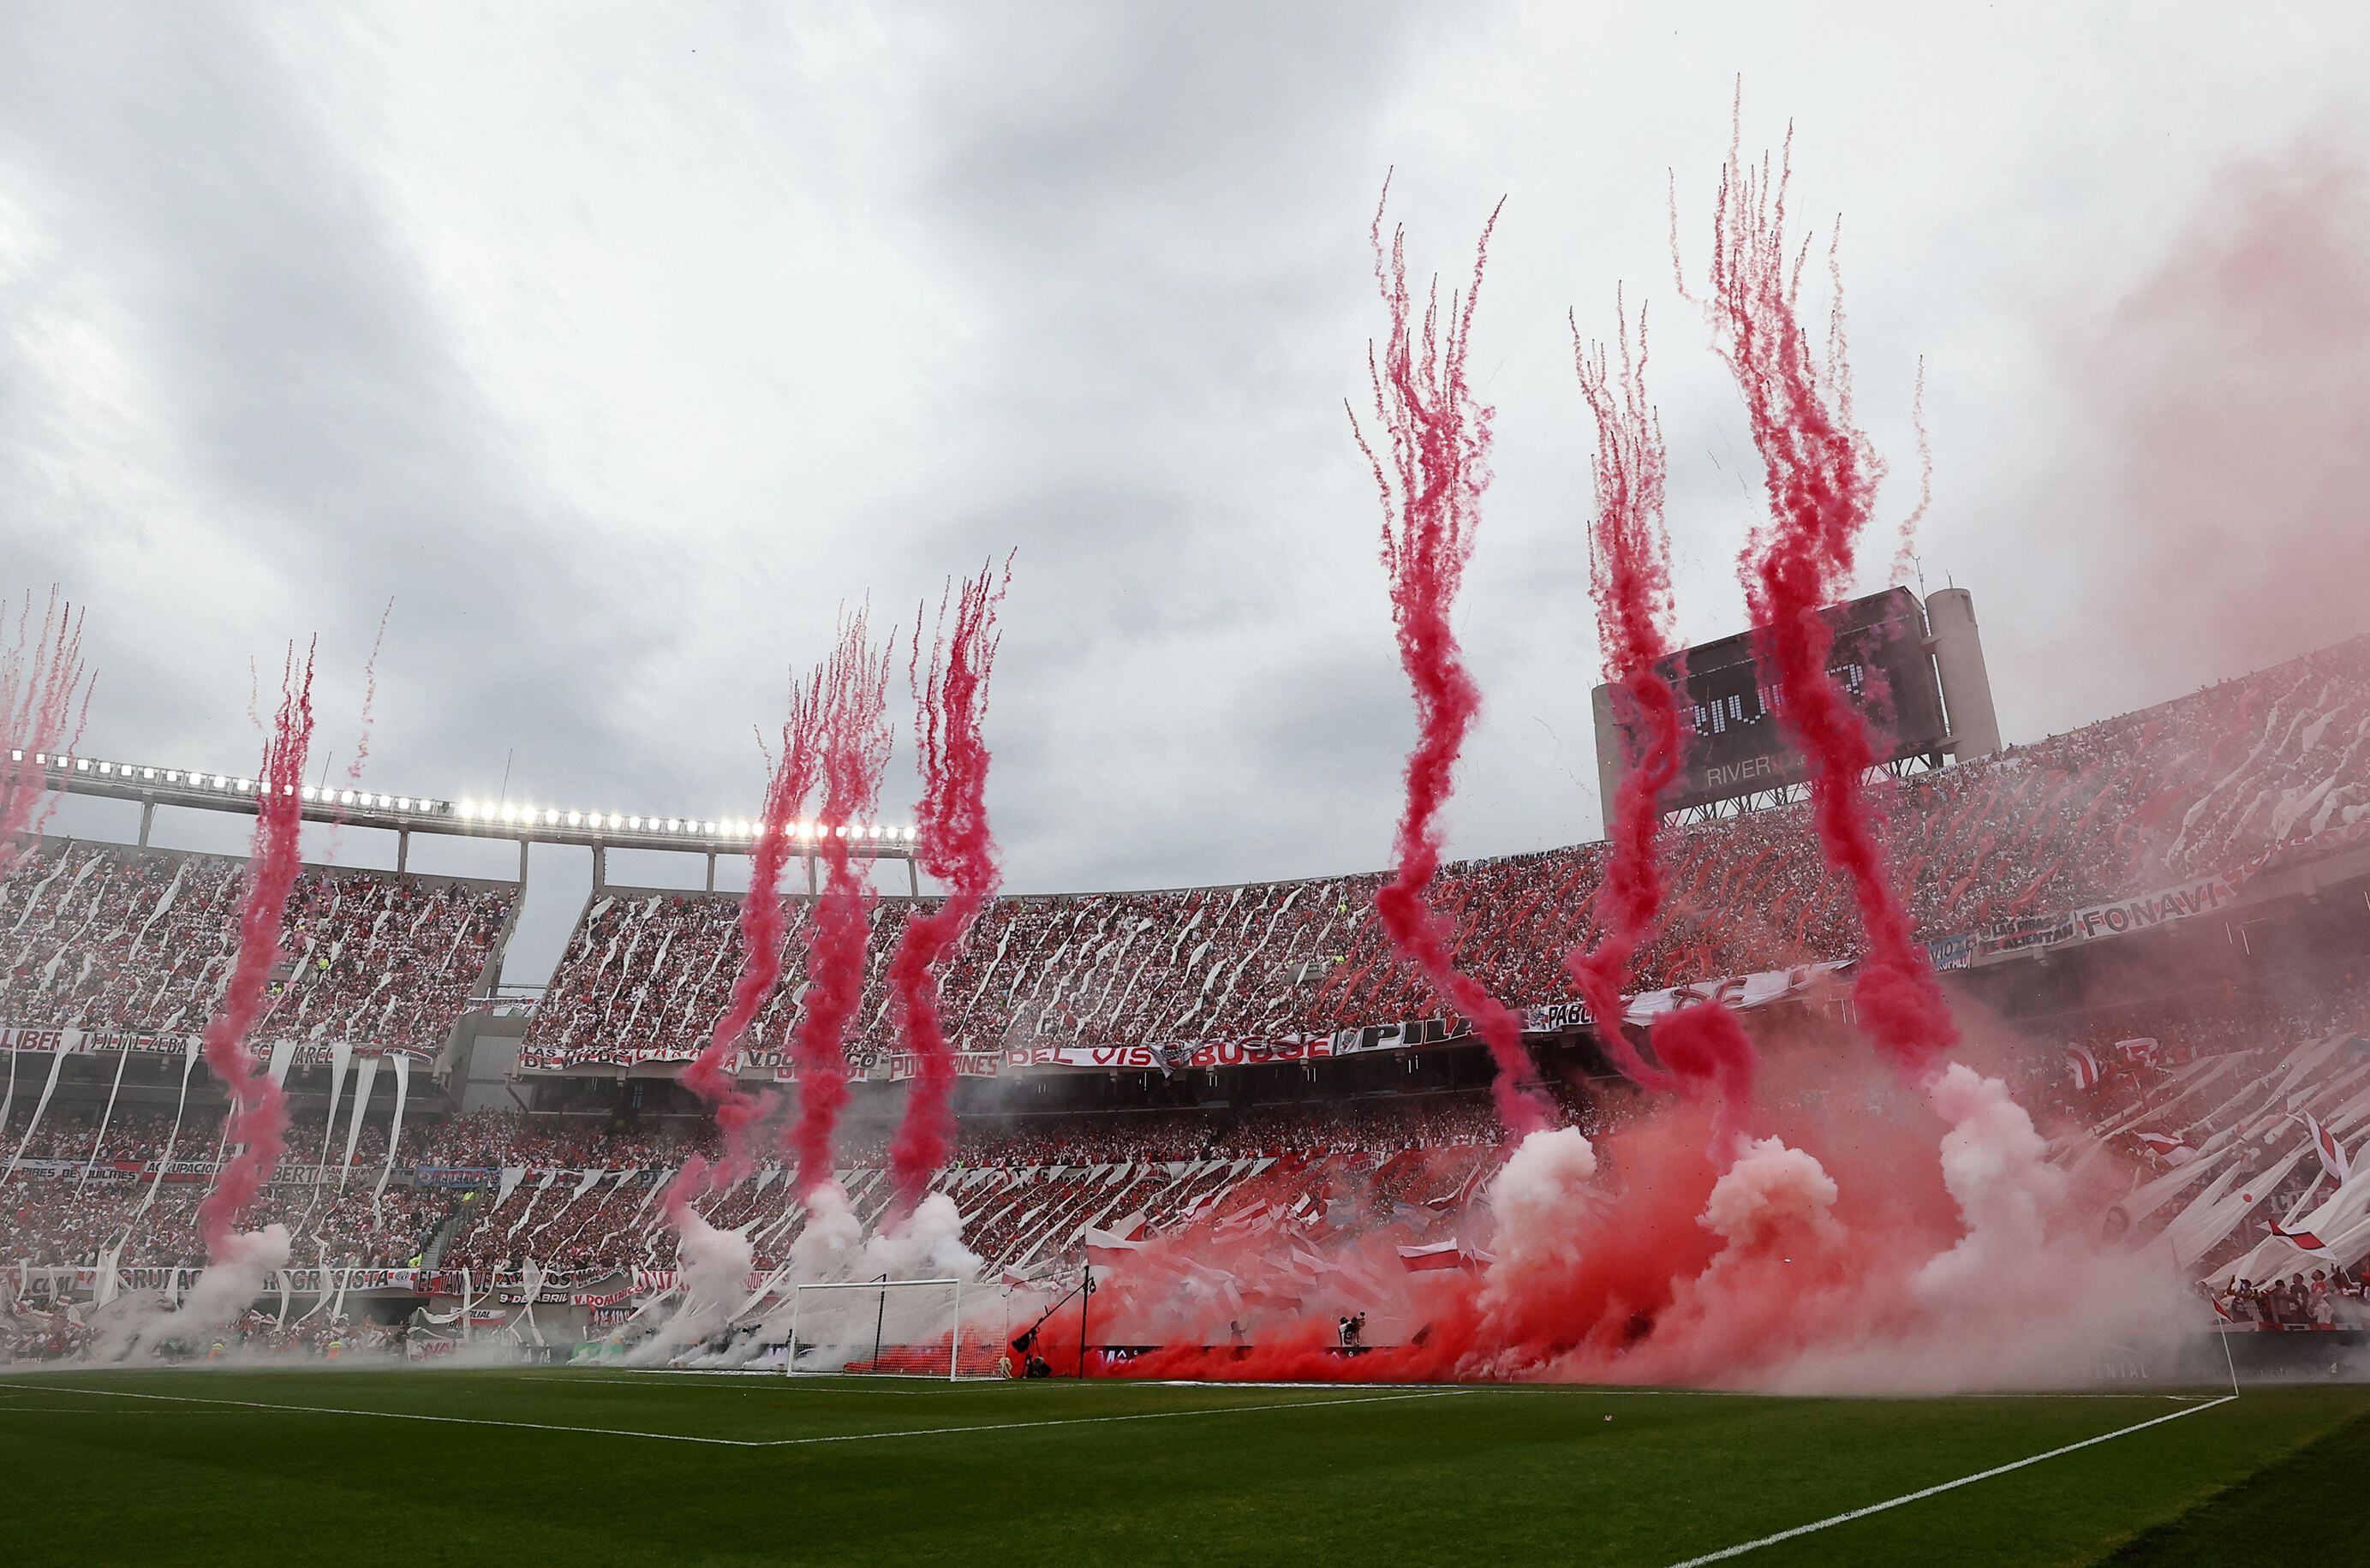 El impresionante recibimiento de River Plate con banderas, bengalas y fuegos artificiales